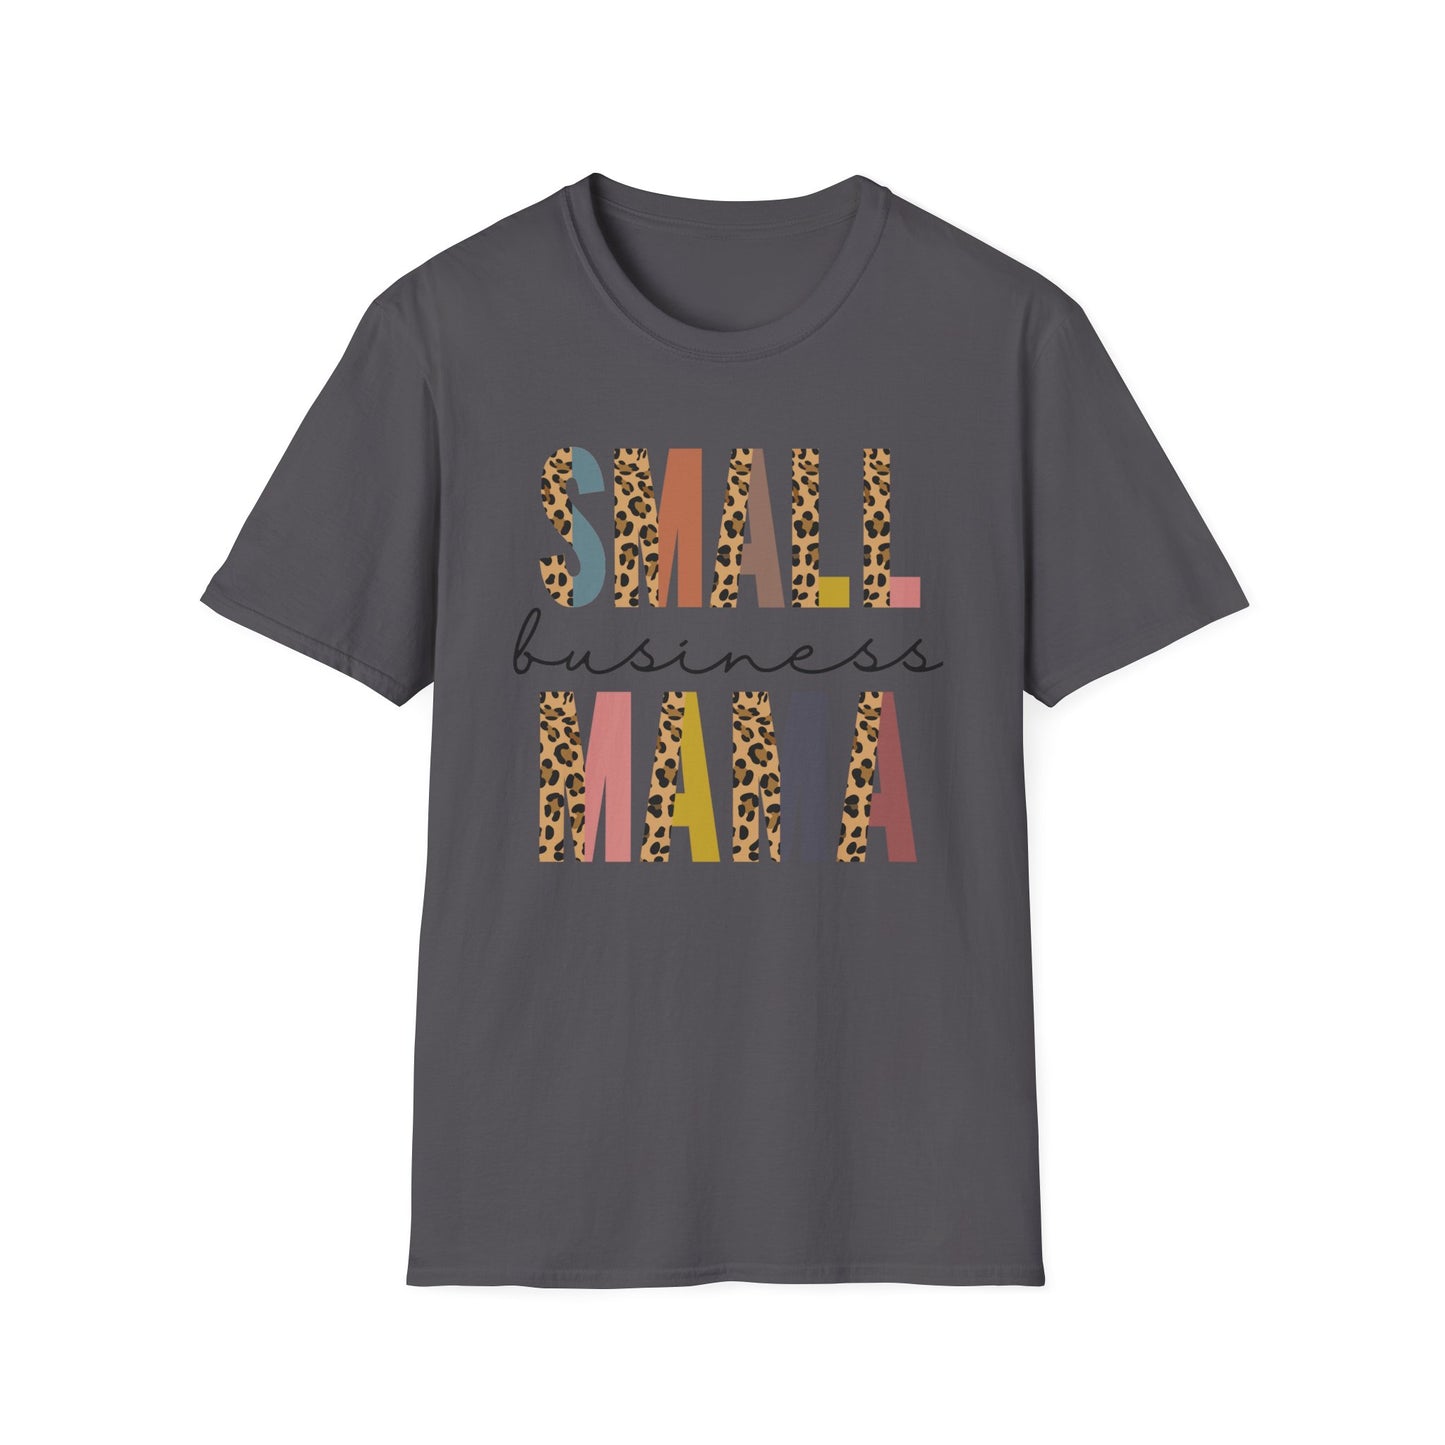 Small Business Mama - Unisex Softstyle T-Shirt